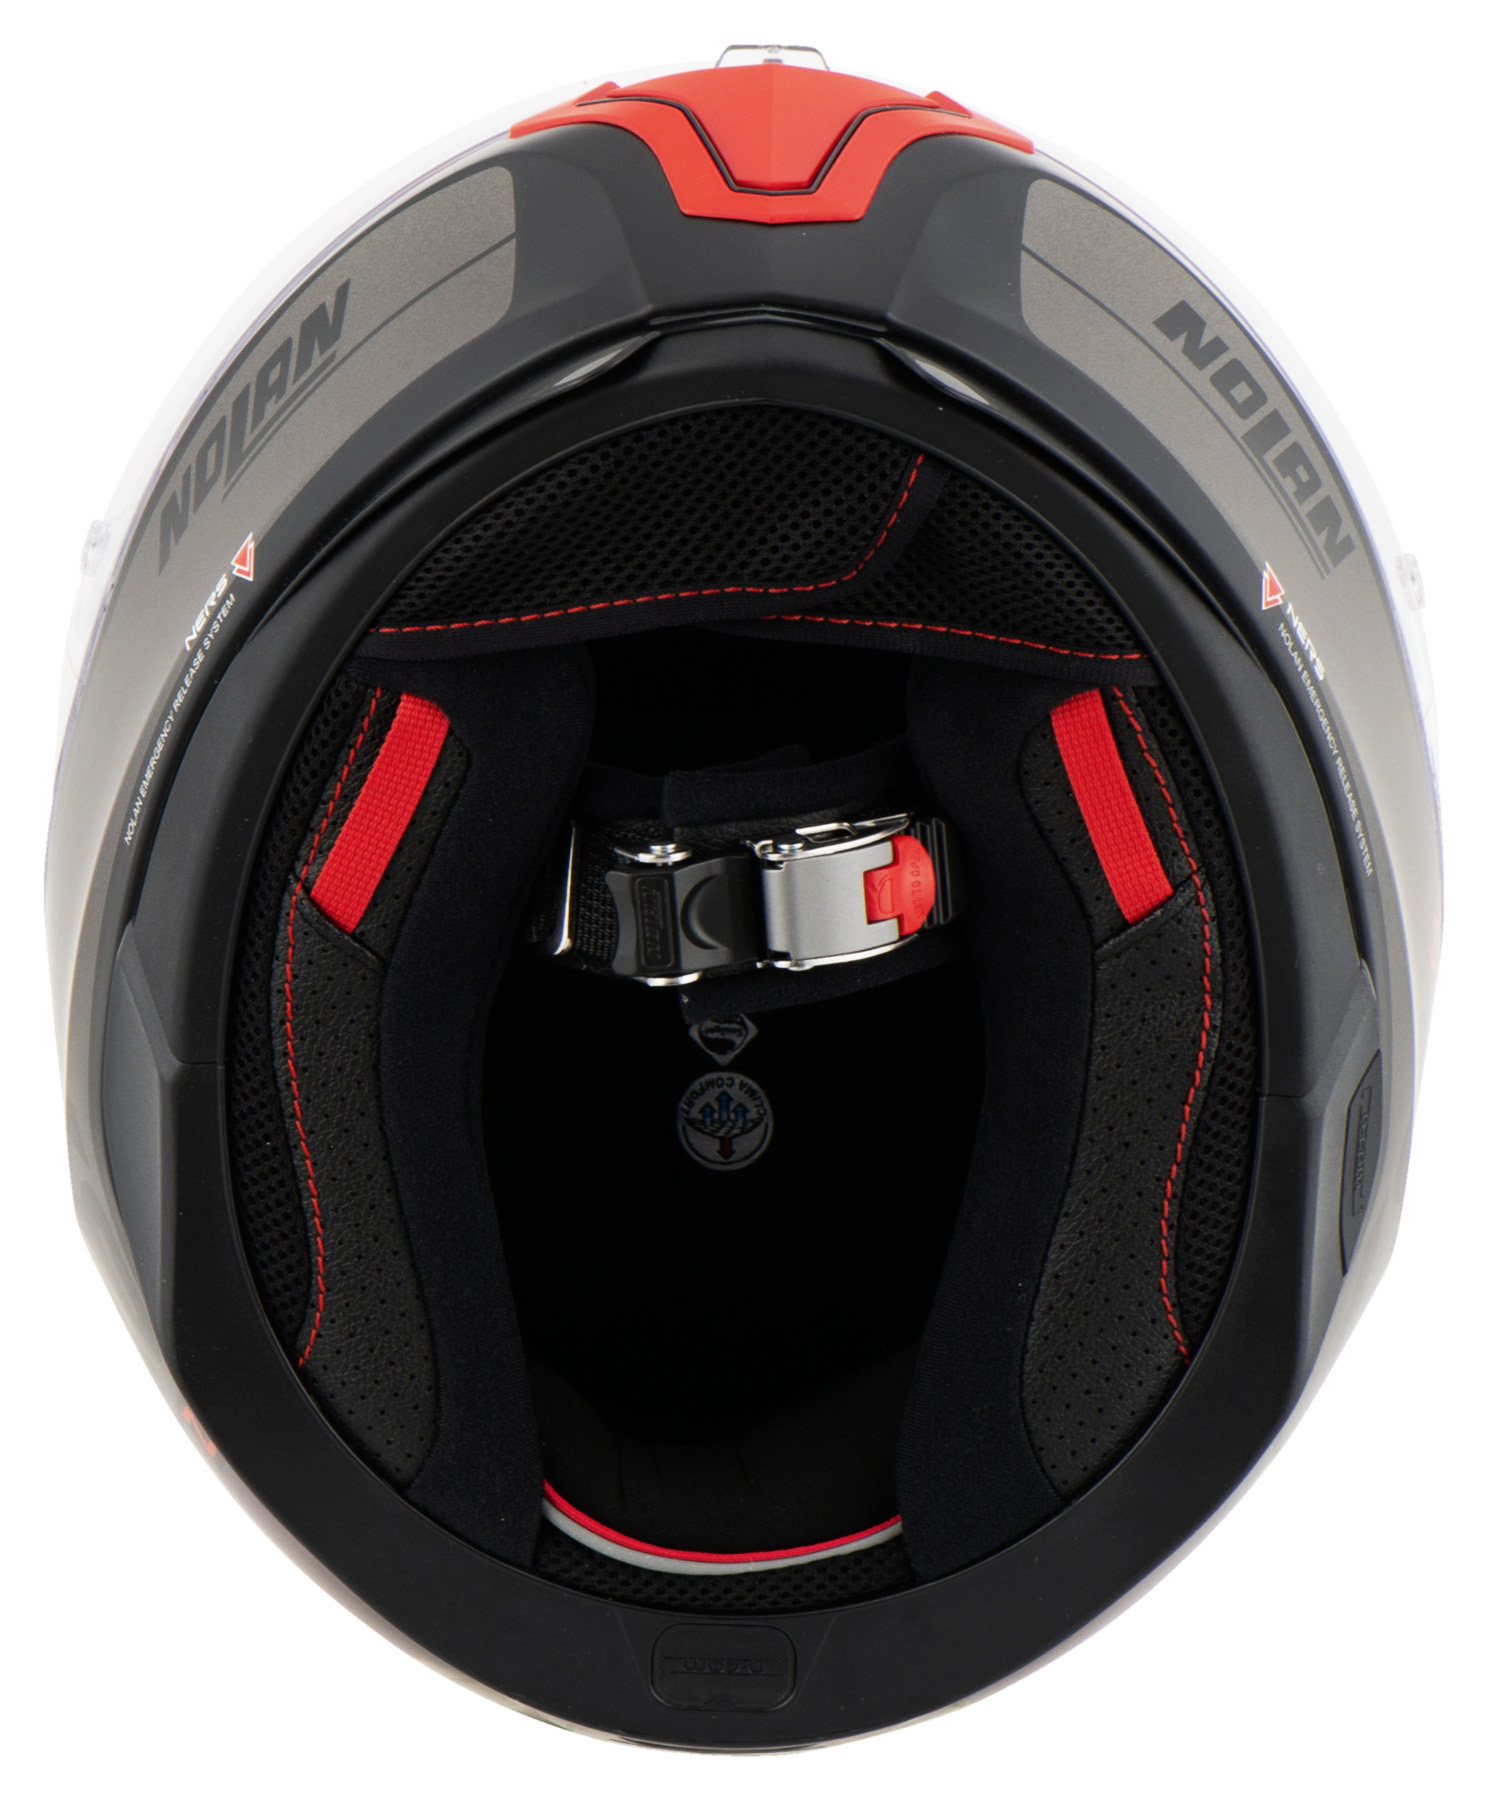 Capacete Nolan N87 Plus Distinctive - Preto/Vermelho - c/ Viseira Interna e Pinlock  - Nova Centro Boutique Roupas para Motociclistas